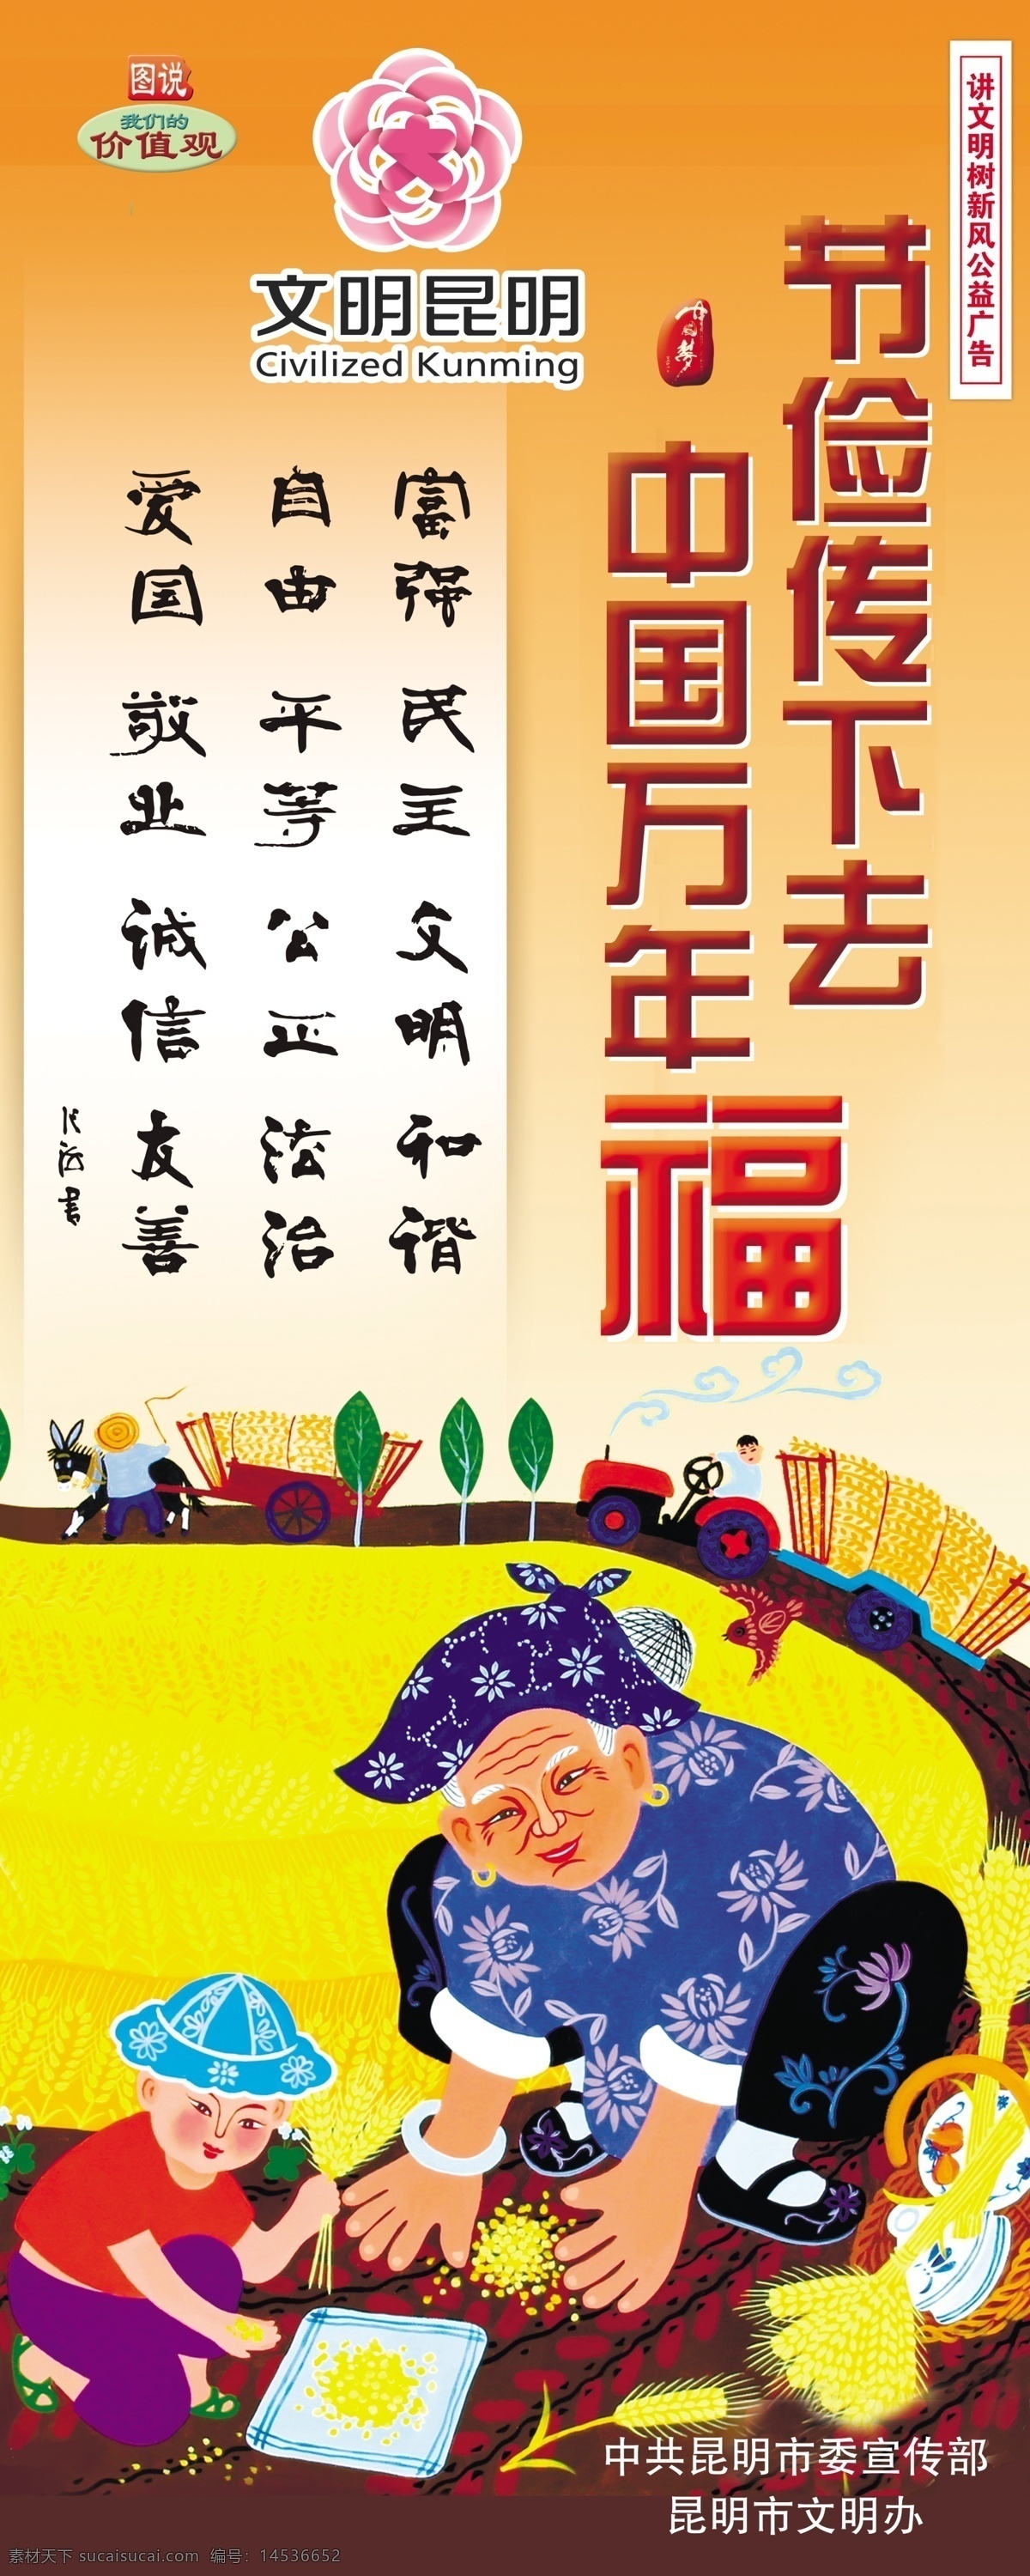 勤俭节约图片 图说价值观 价值观 中国梦 中国梦海报 中国梦展板